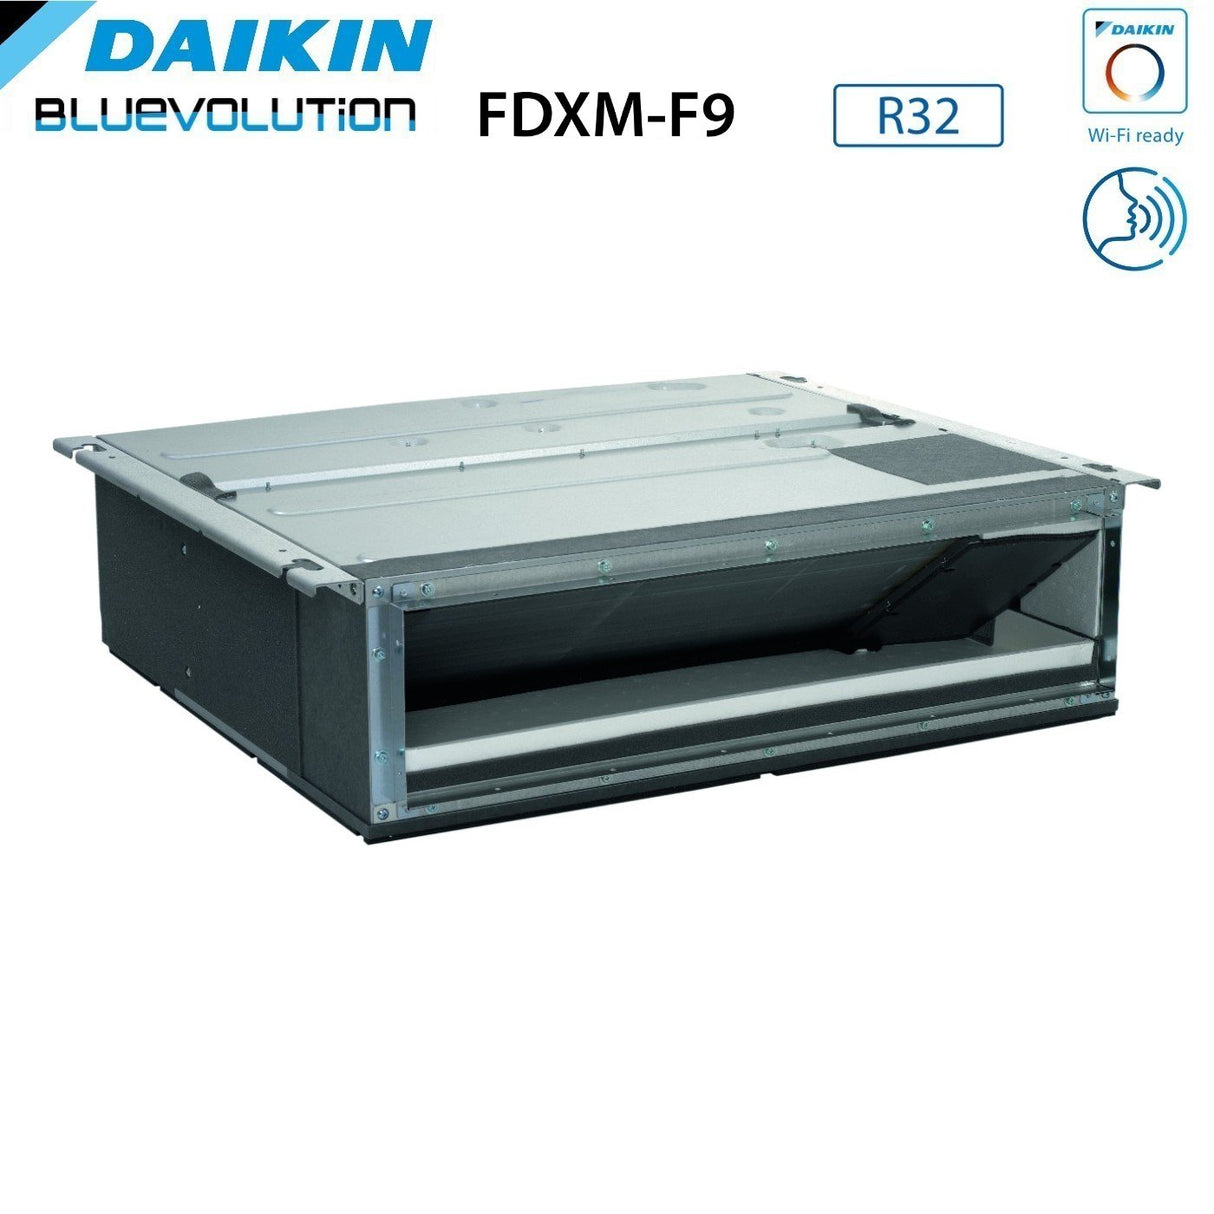 immagine-4-daikin-climatizzatore-condizionatore-daikin-bluevolution-dual-split-canalizzato-canalizzabile-inverter-serie-fdxm-f9-912-con-2mxm50a-r-32-wi-fi-optional-900012000-garanzia-italiana